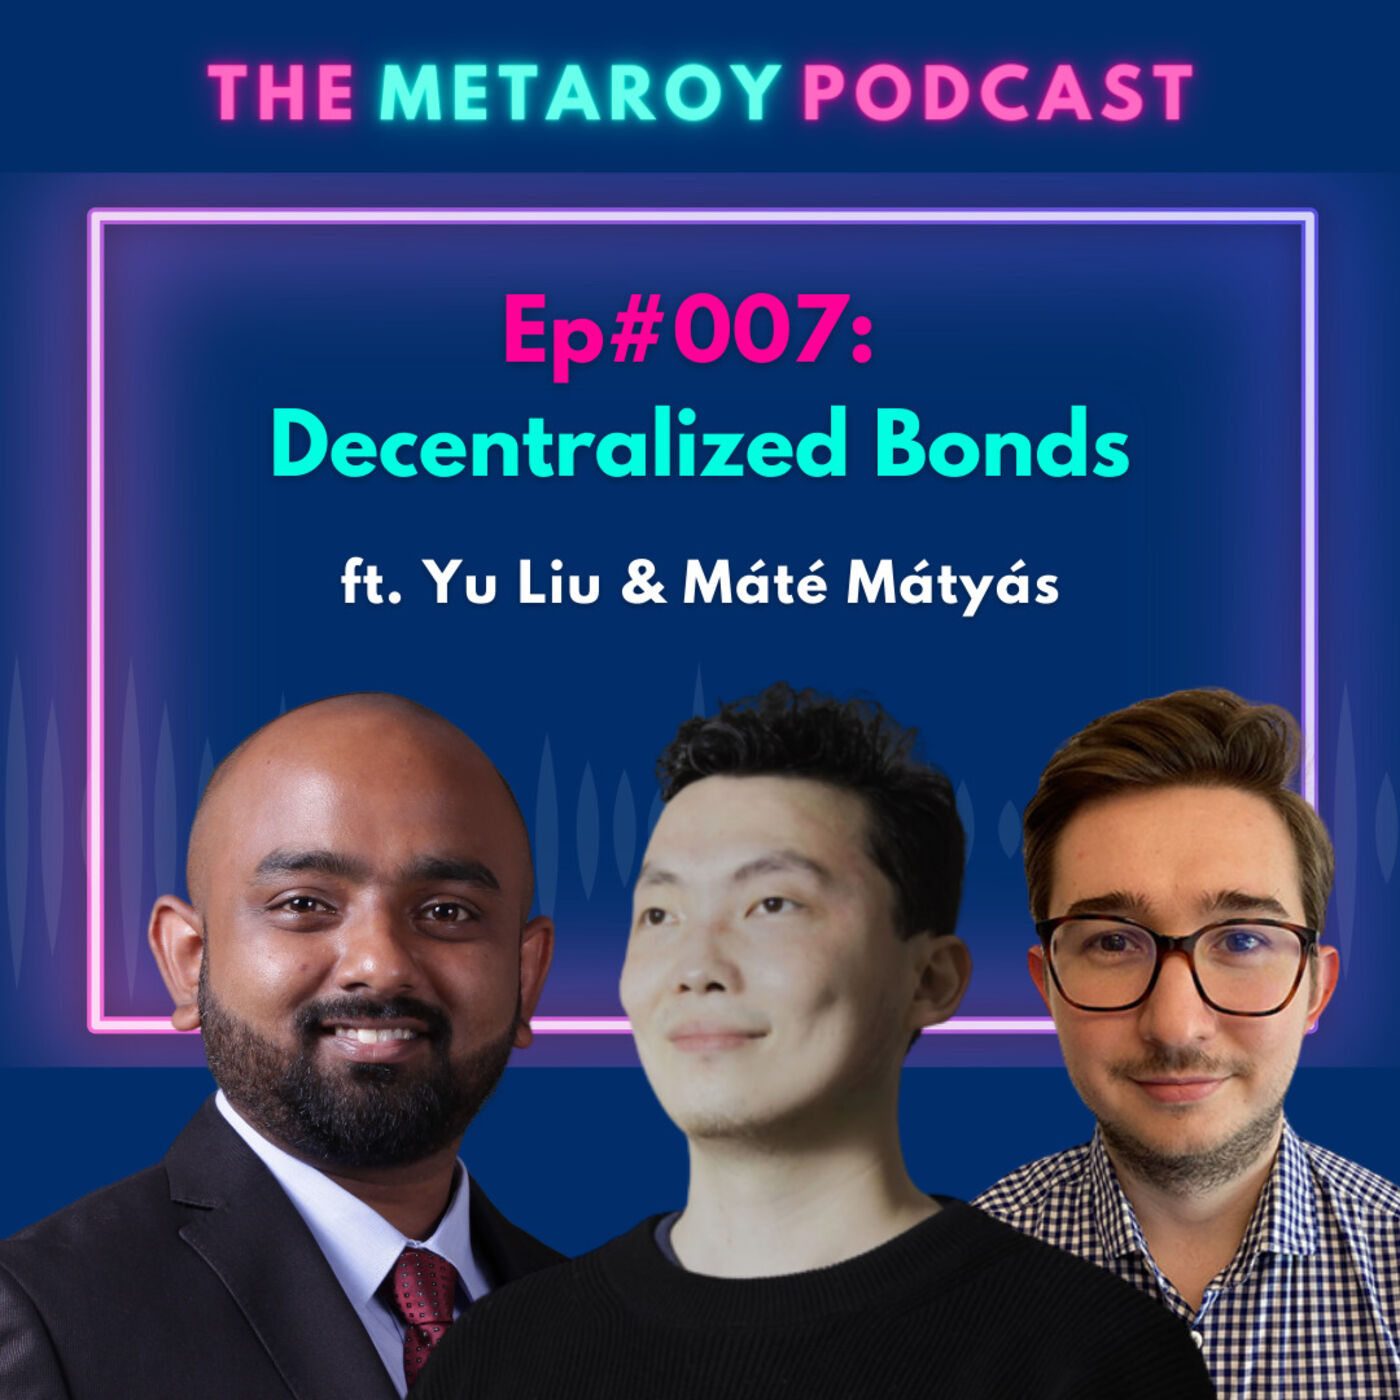 Yu Liu: Decentralized Bonds | Ep #007